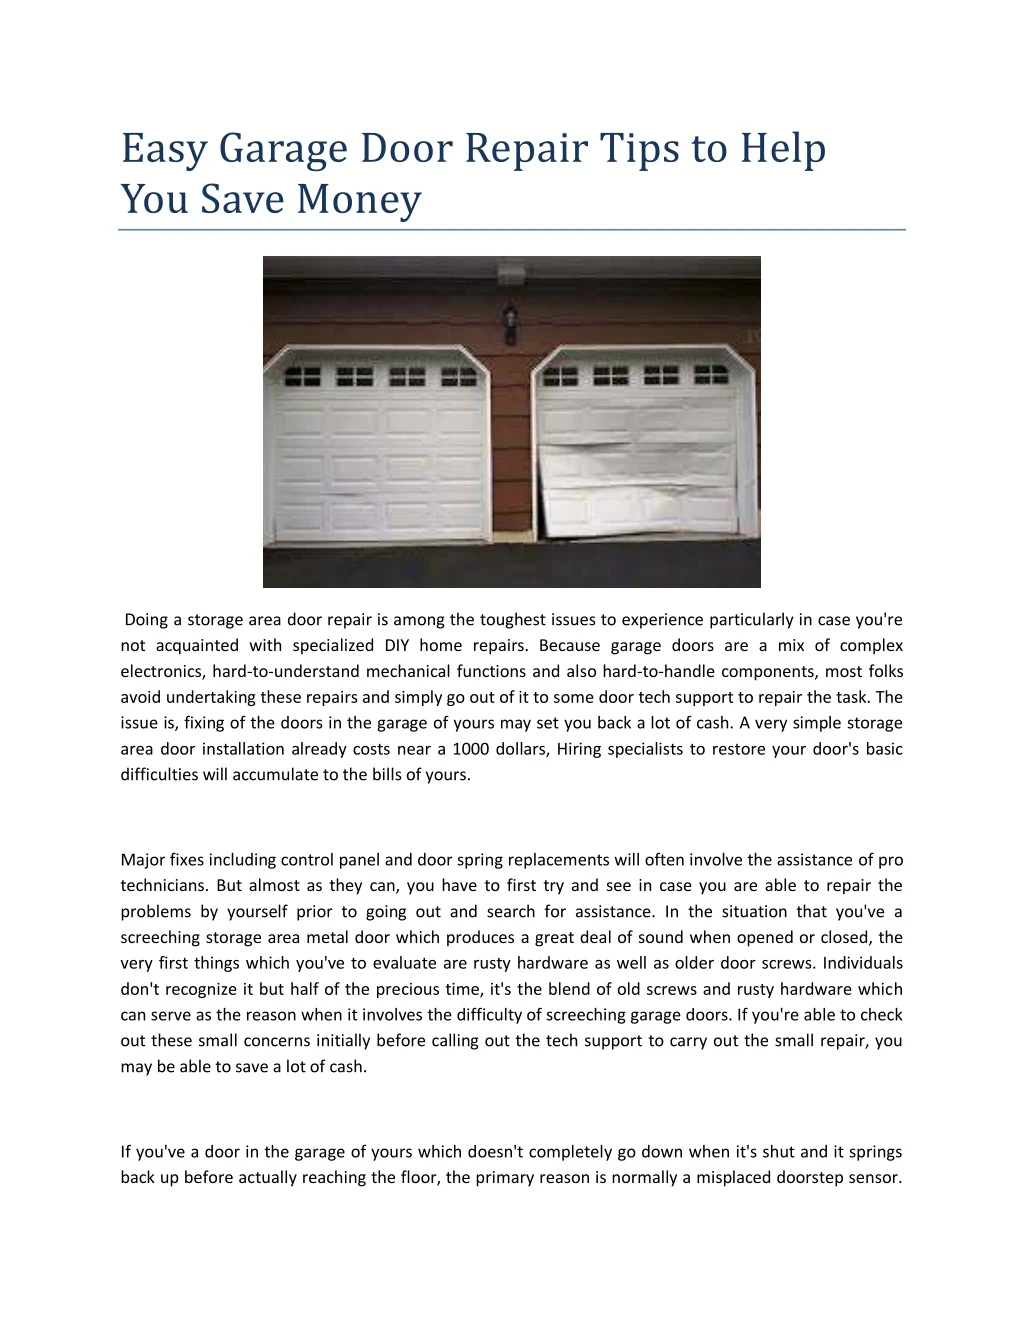 easy garage door repair tips to help you save